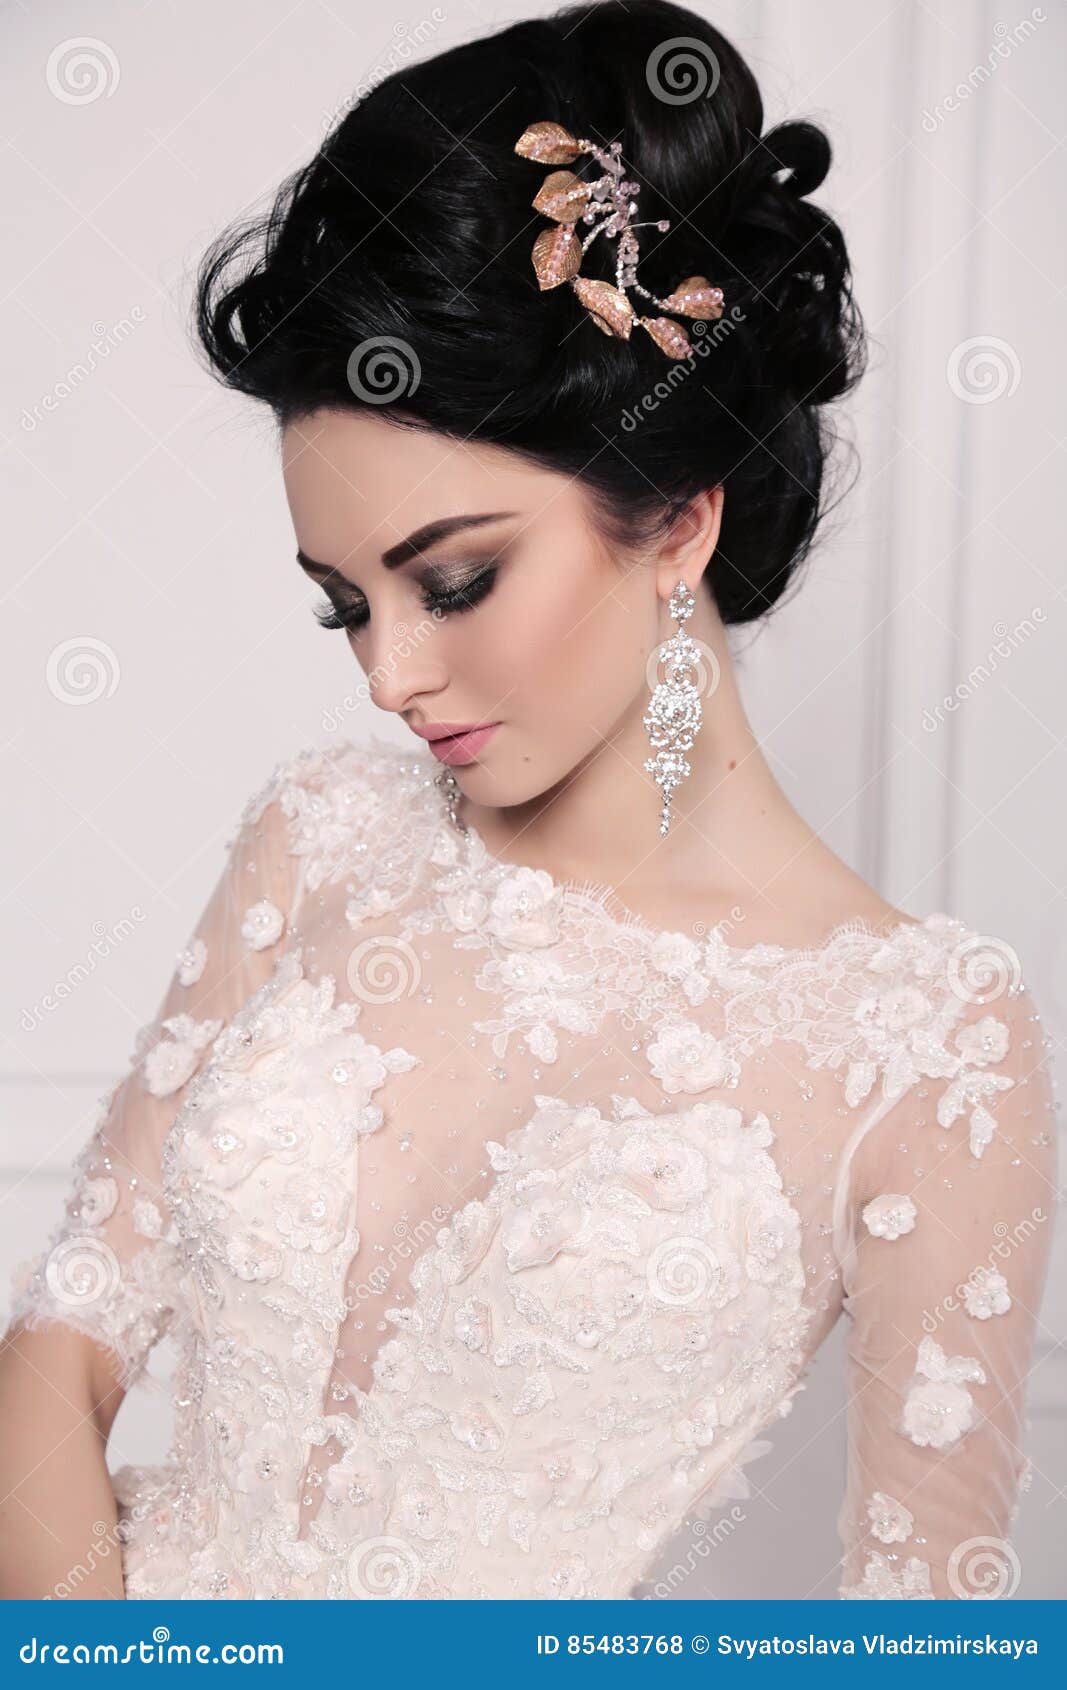 gorgeous bride with dark hair in luxuious wedding dress